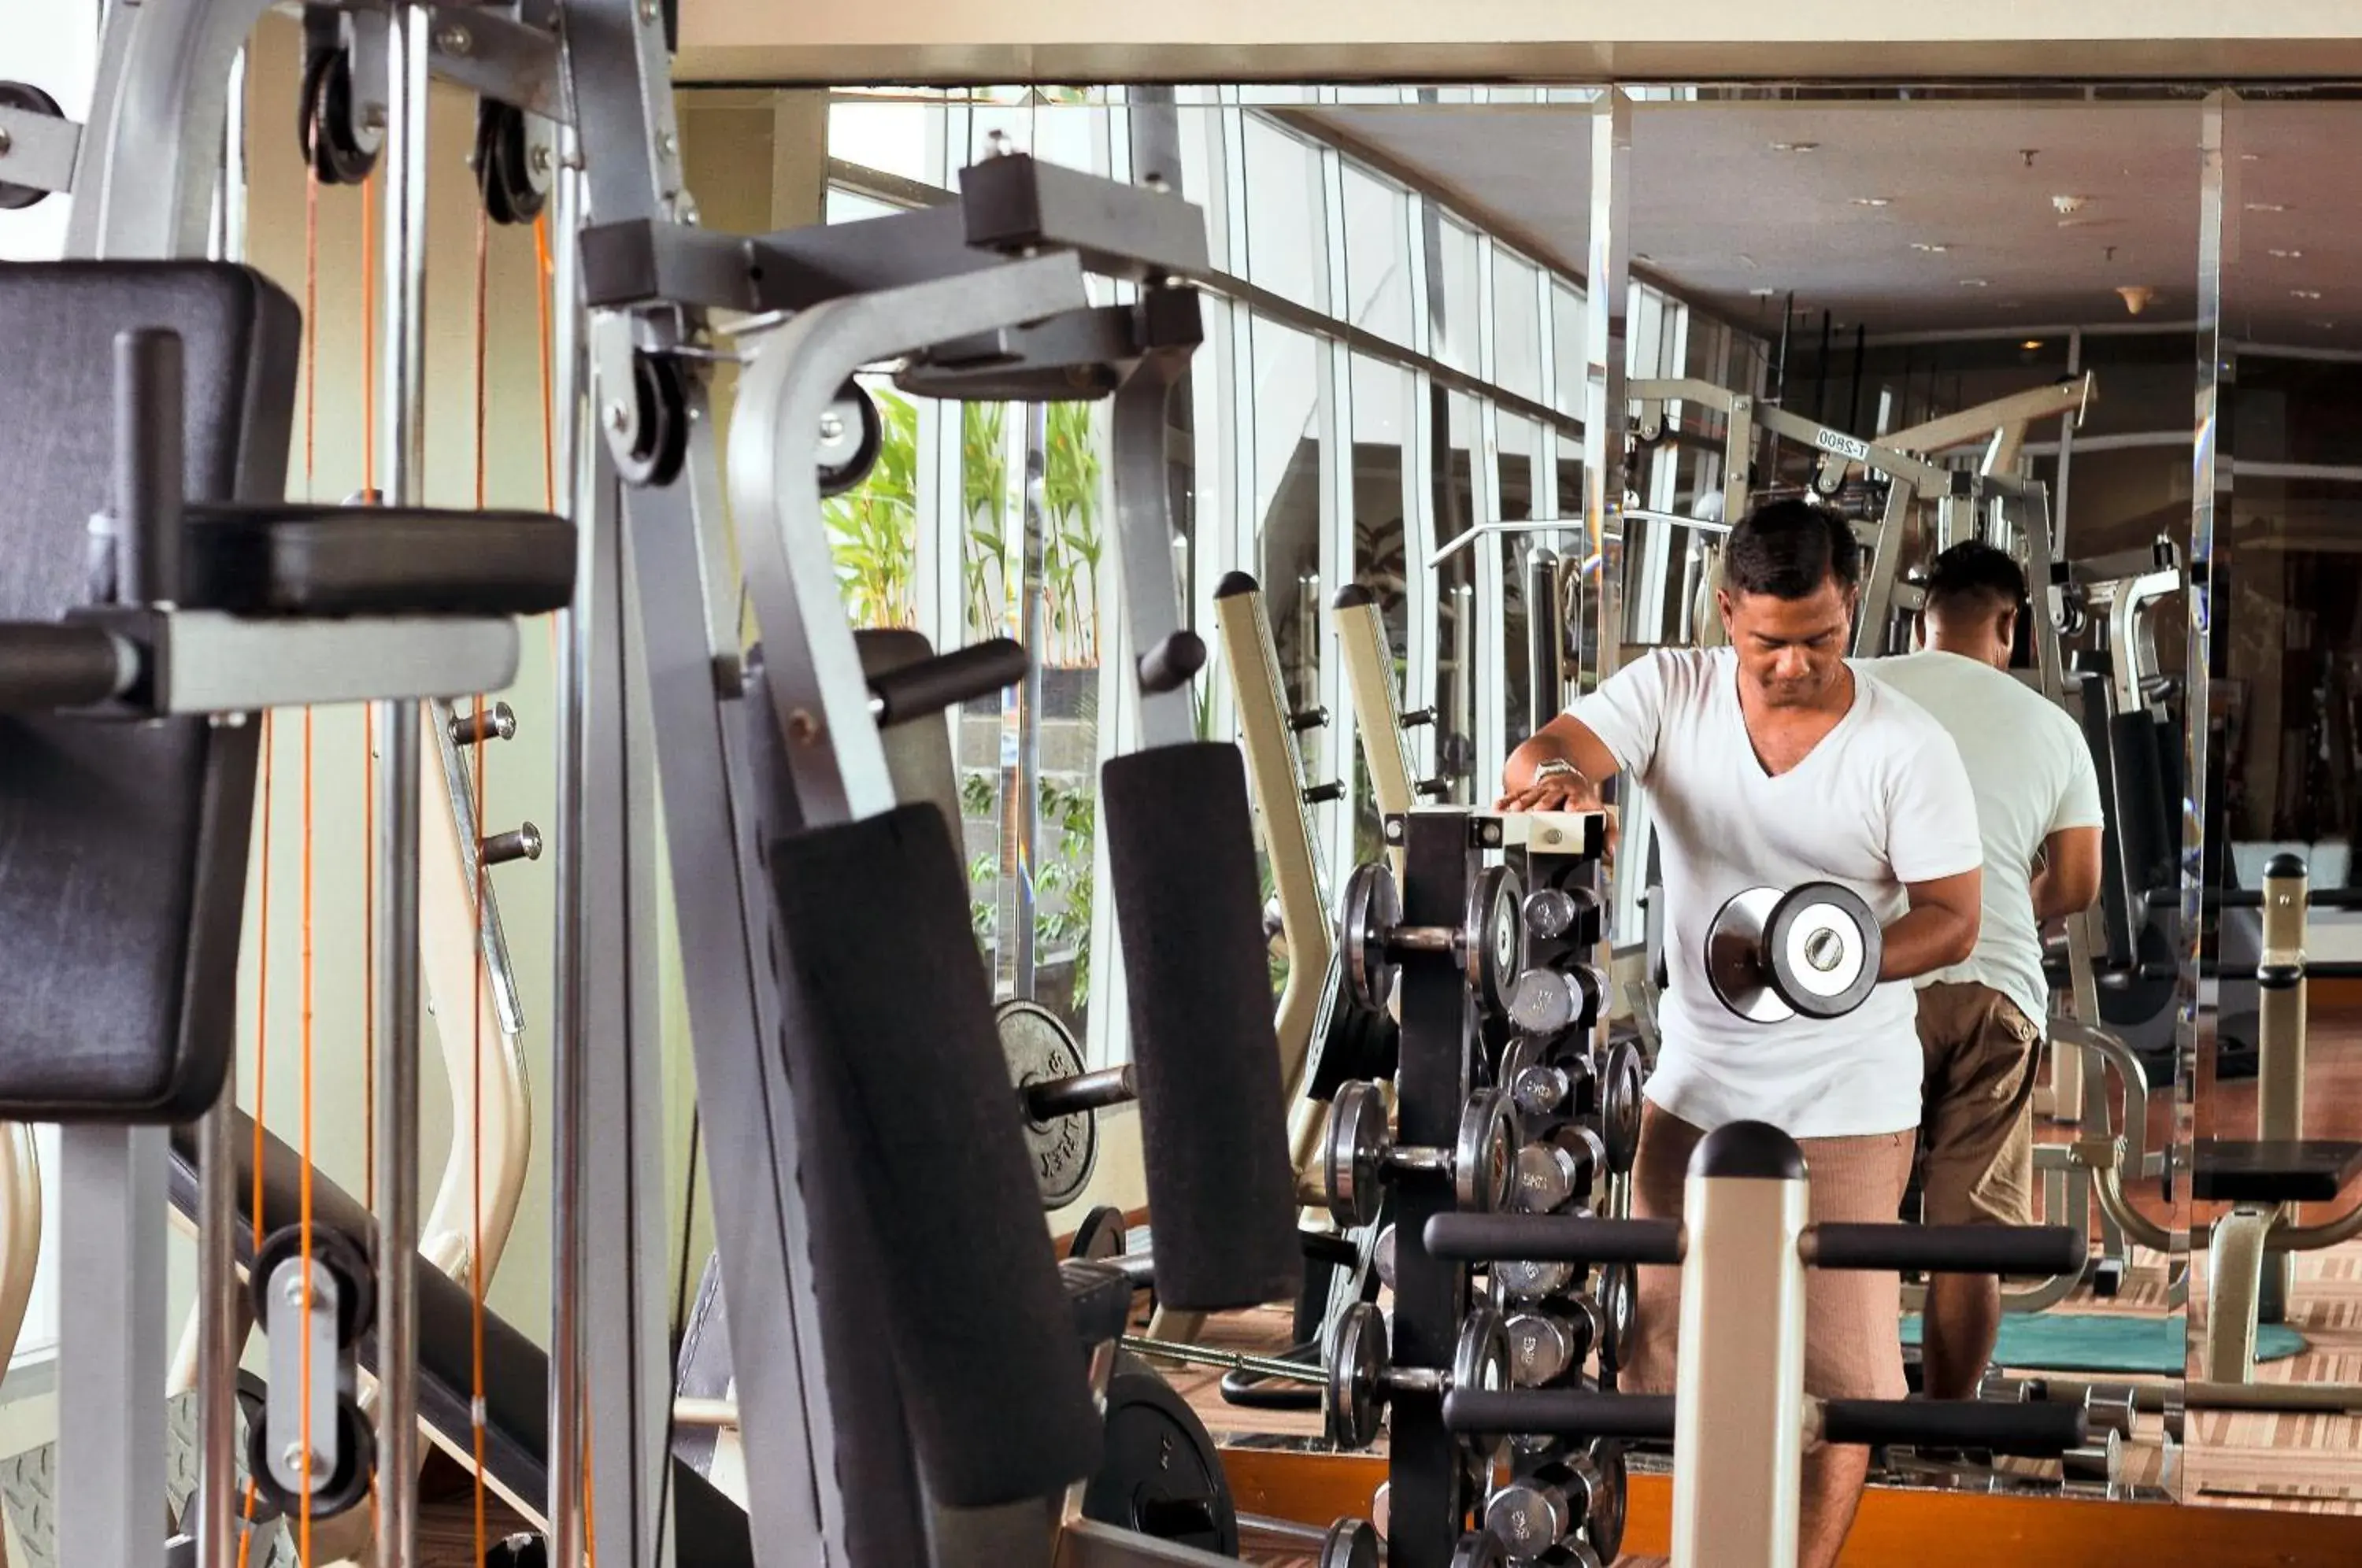 Fitness centre/facilities, Fitness Center/Facilities in Park Regis Arion Kemang